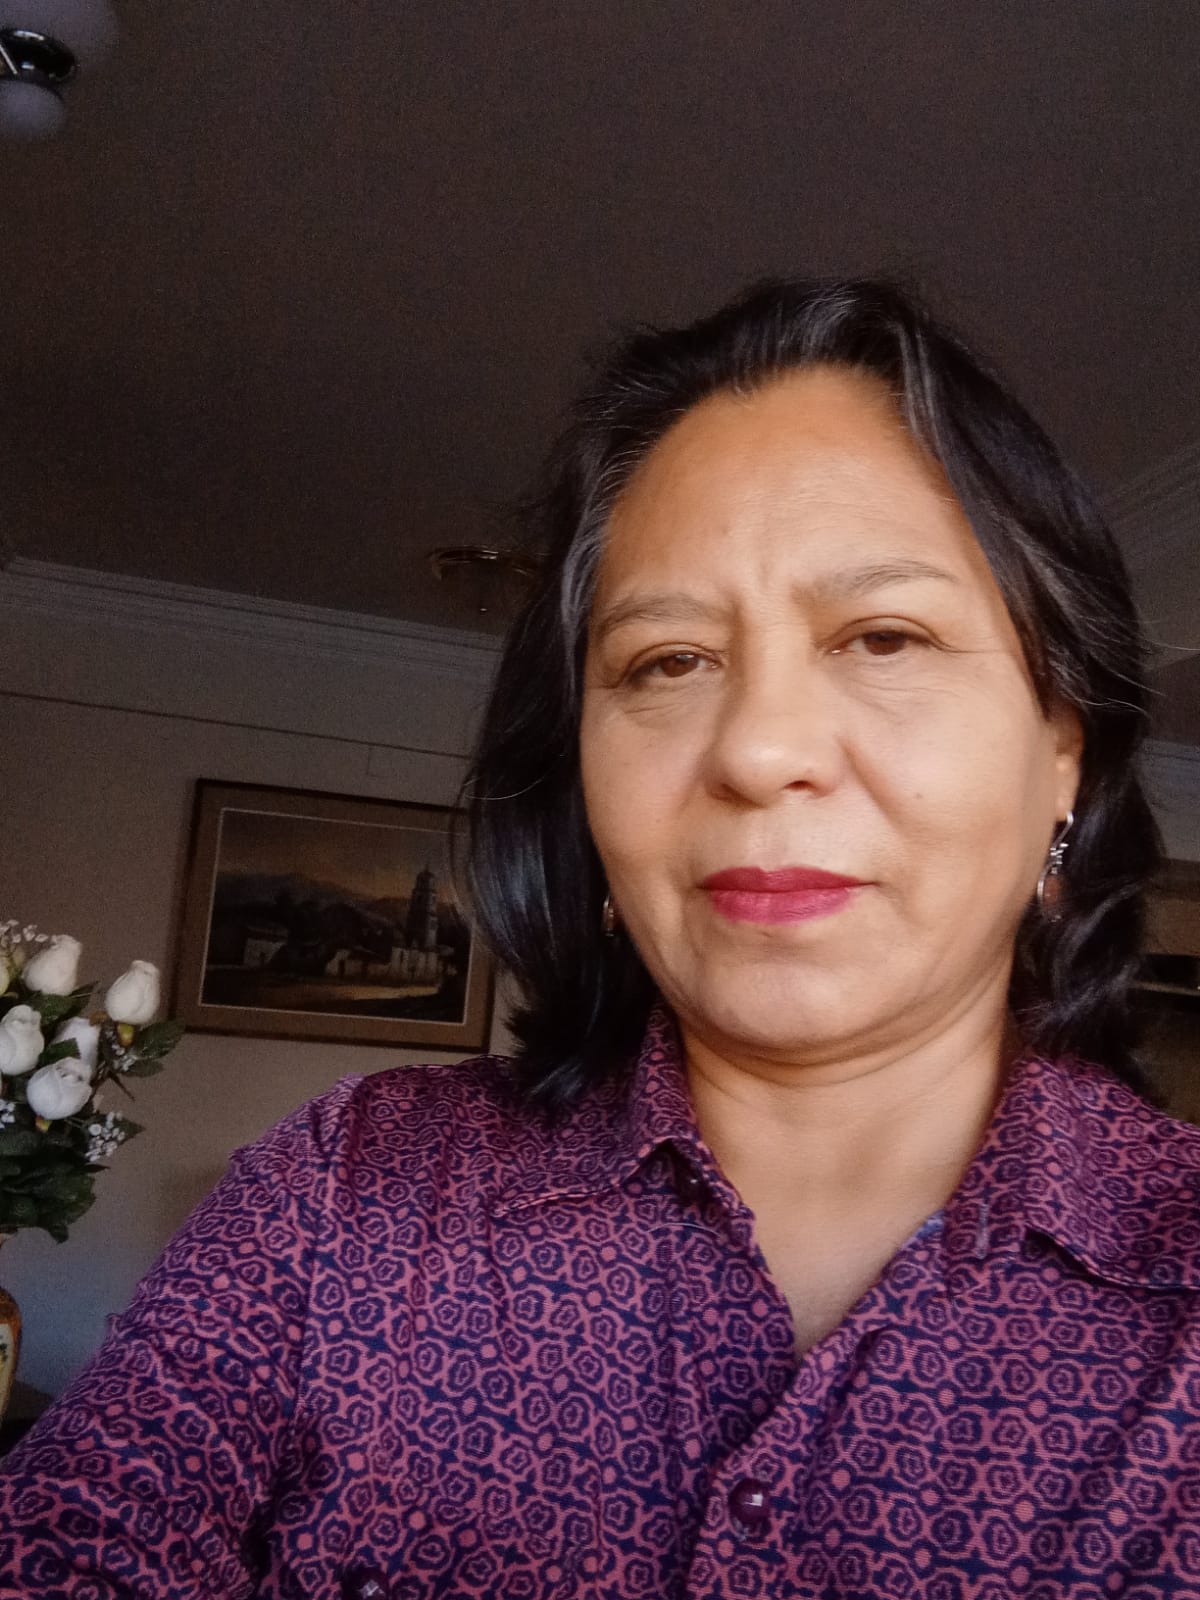 María Luisa Mercado Castro es periodista independiente. Trabajó más de 26 años como reportera y editora en el diario Opinión de Cochabamba. Escribe reportajes sobre Derechos Humanos y cultura de paz. Obtuvo una mención honorífica en el concurso “Sin censura previa» de Unitas en 2019.